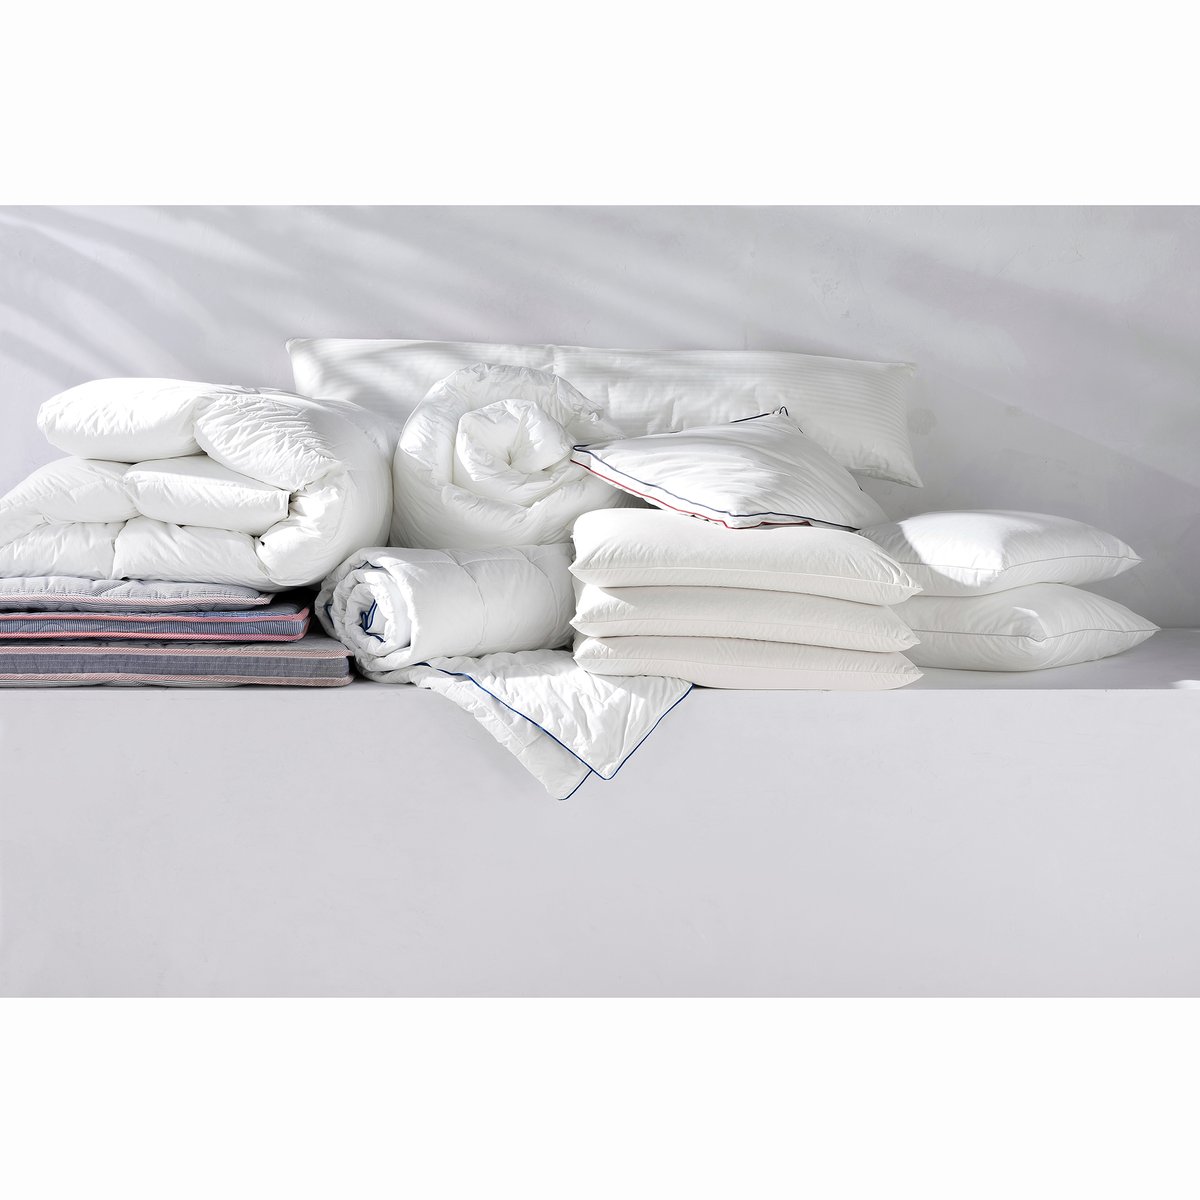 Одеяло La Redoute Из  гусиного пуха гм Miglio 240 x 220 см белый, размер 240 x 220 см - фото 3